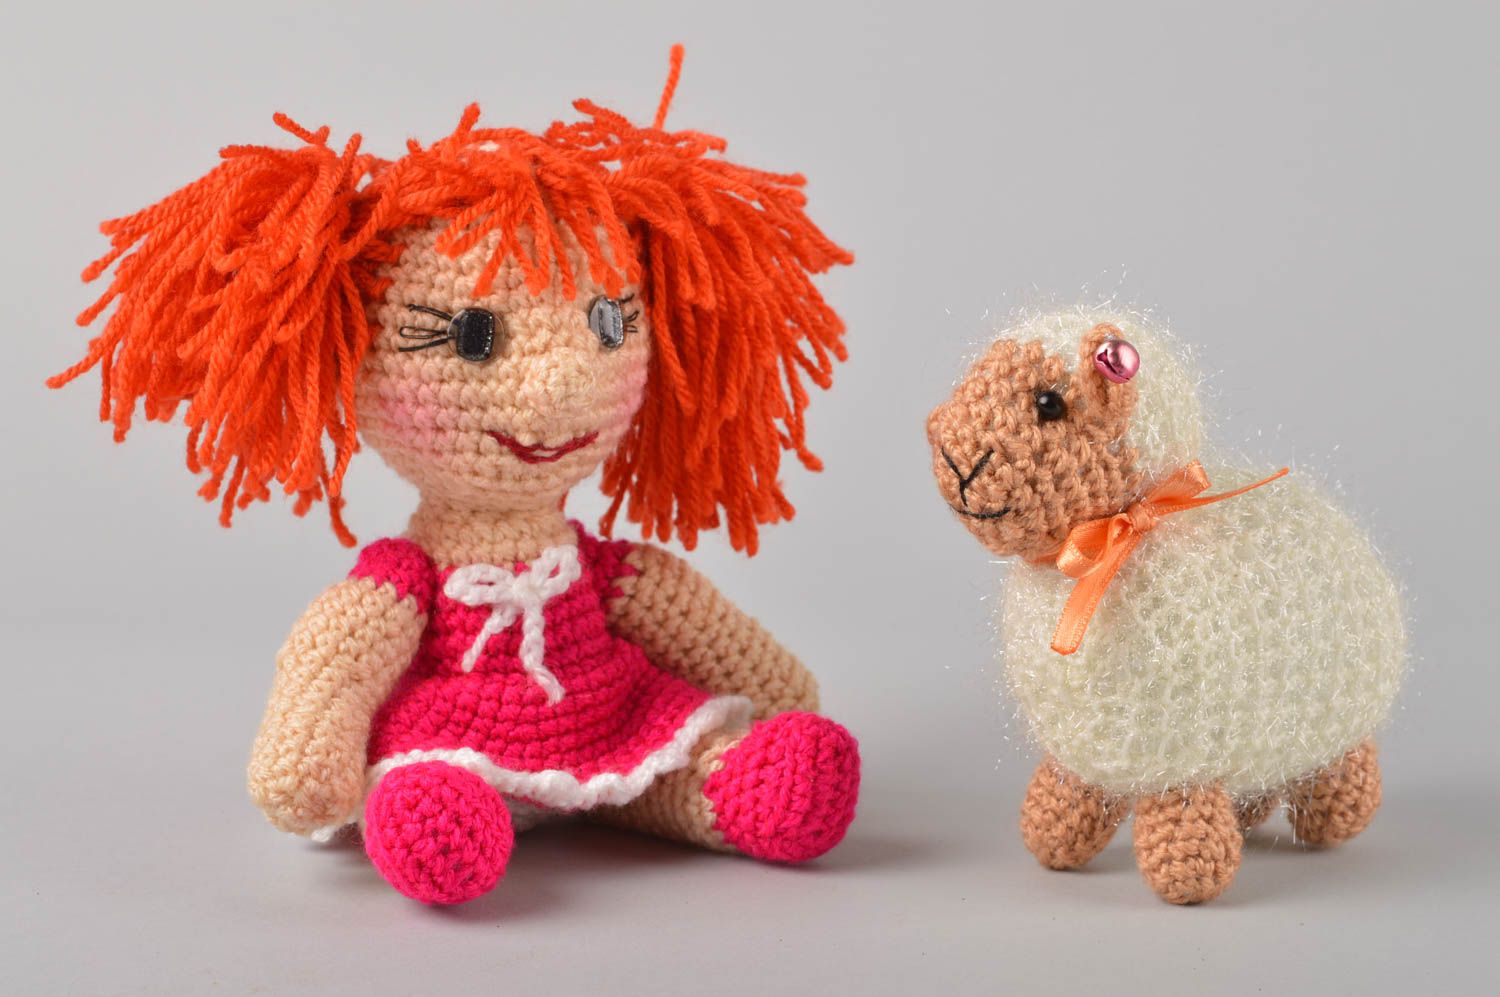 Handmade doll designer doll crocheted doll gift for girl nursery decor photo 2